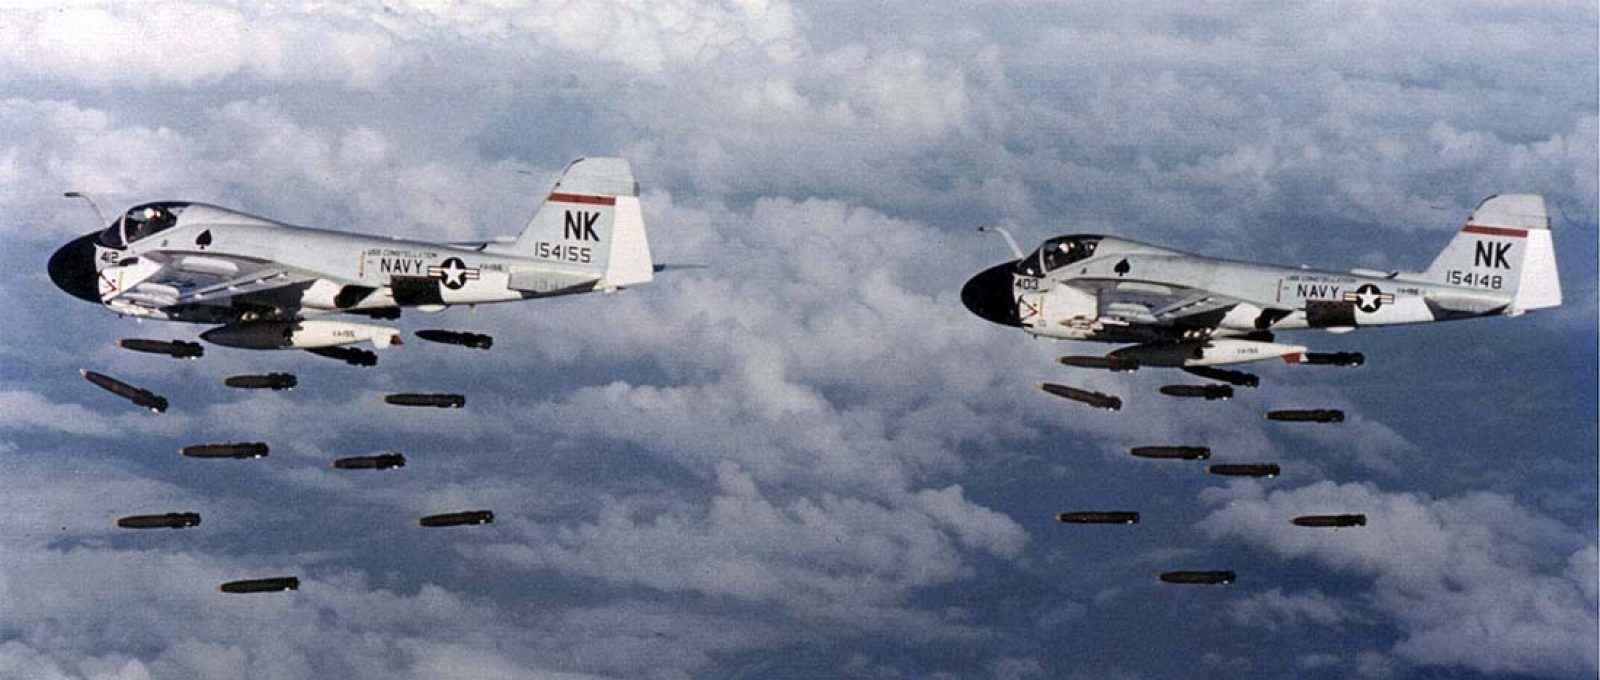 Aernaves A-6A Intruder da Marinha americana realizam um bombardeio na Operação Rolling Thunder, em 20 de dezembro de 1968 (US Navy).